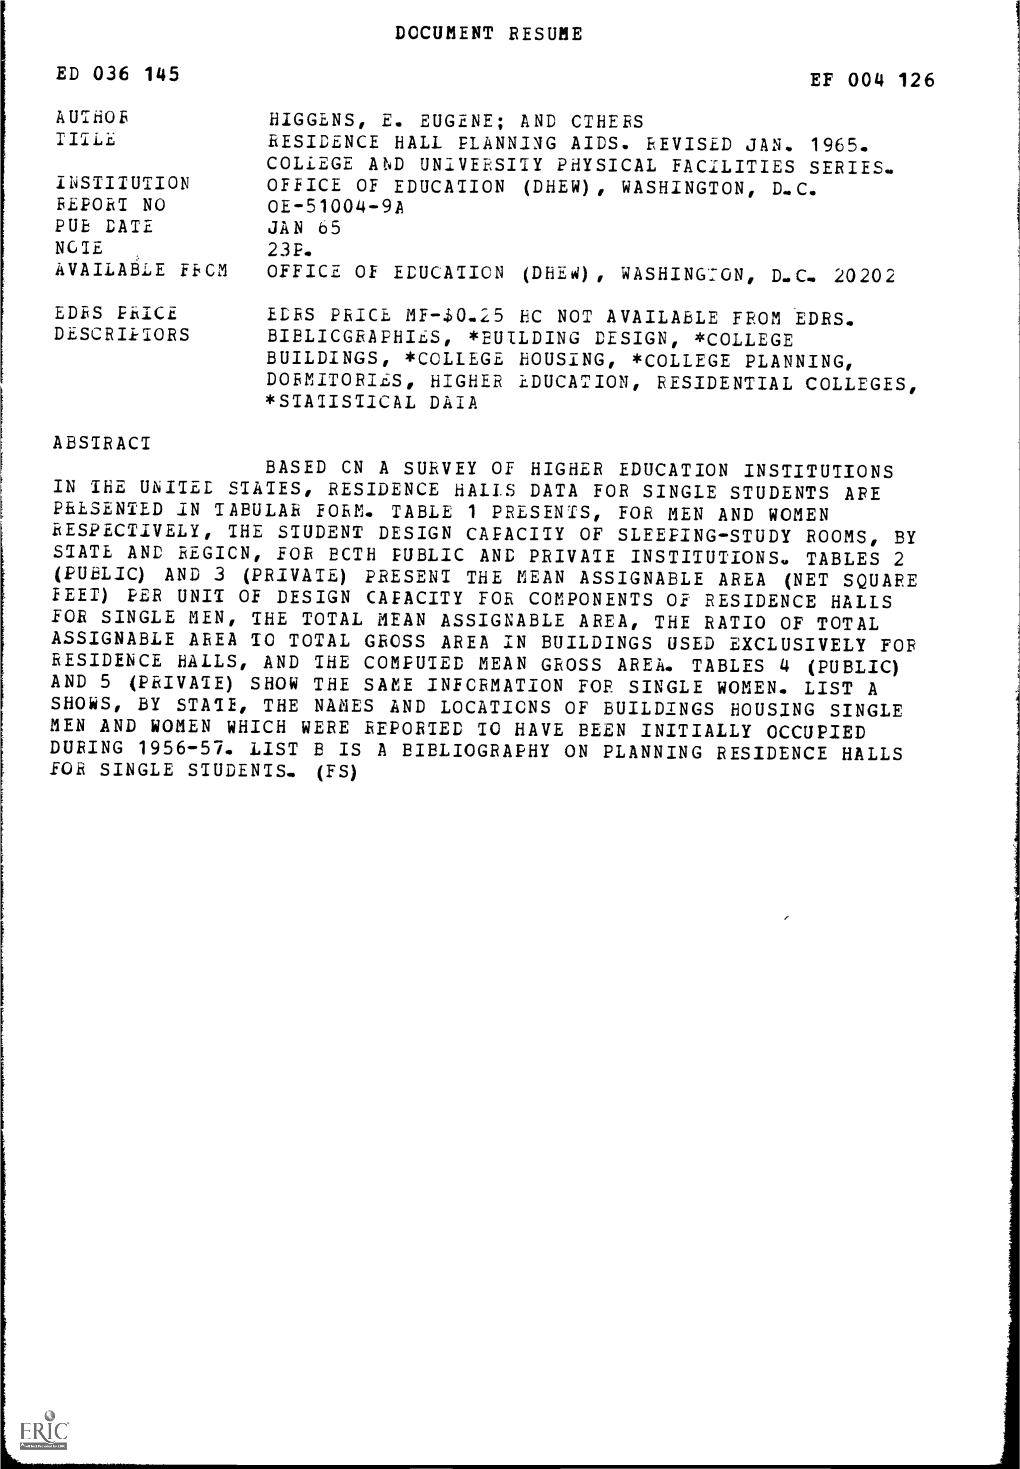 Ed 036 145 Document Resume Ef 004 126 Higgens, E. Eugene